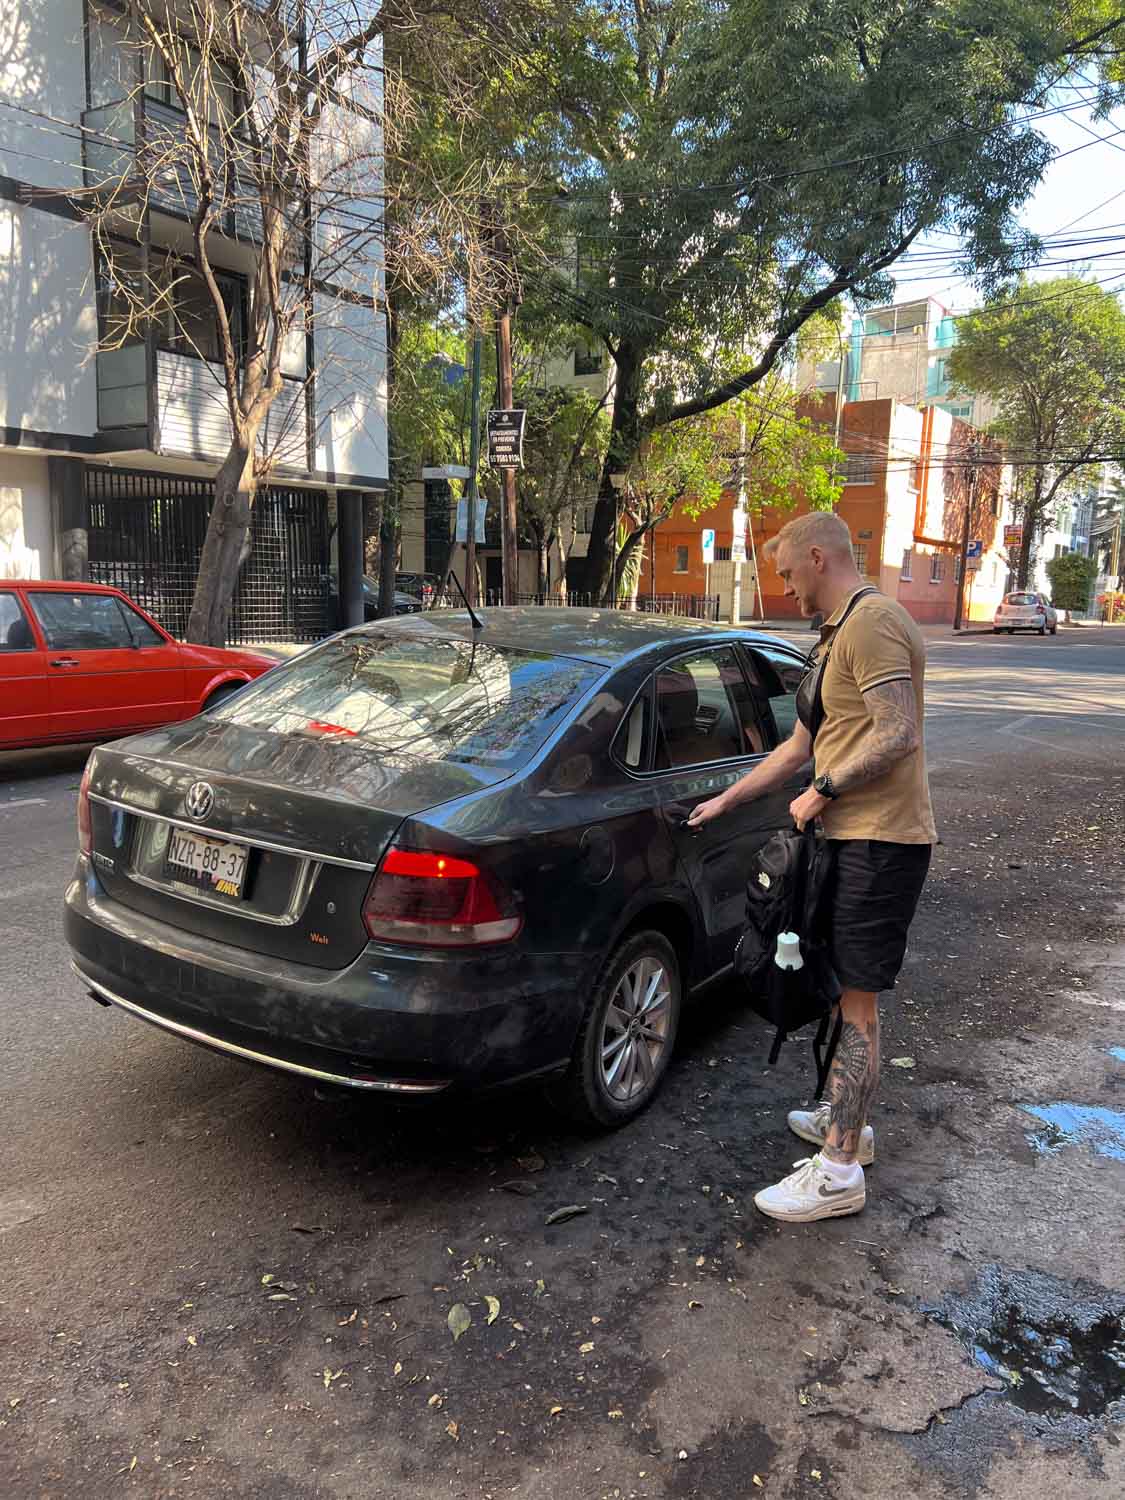 Blogger Robin getting into Uber car in La Condesa.